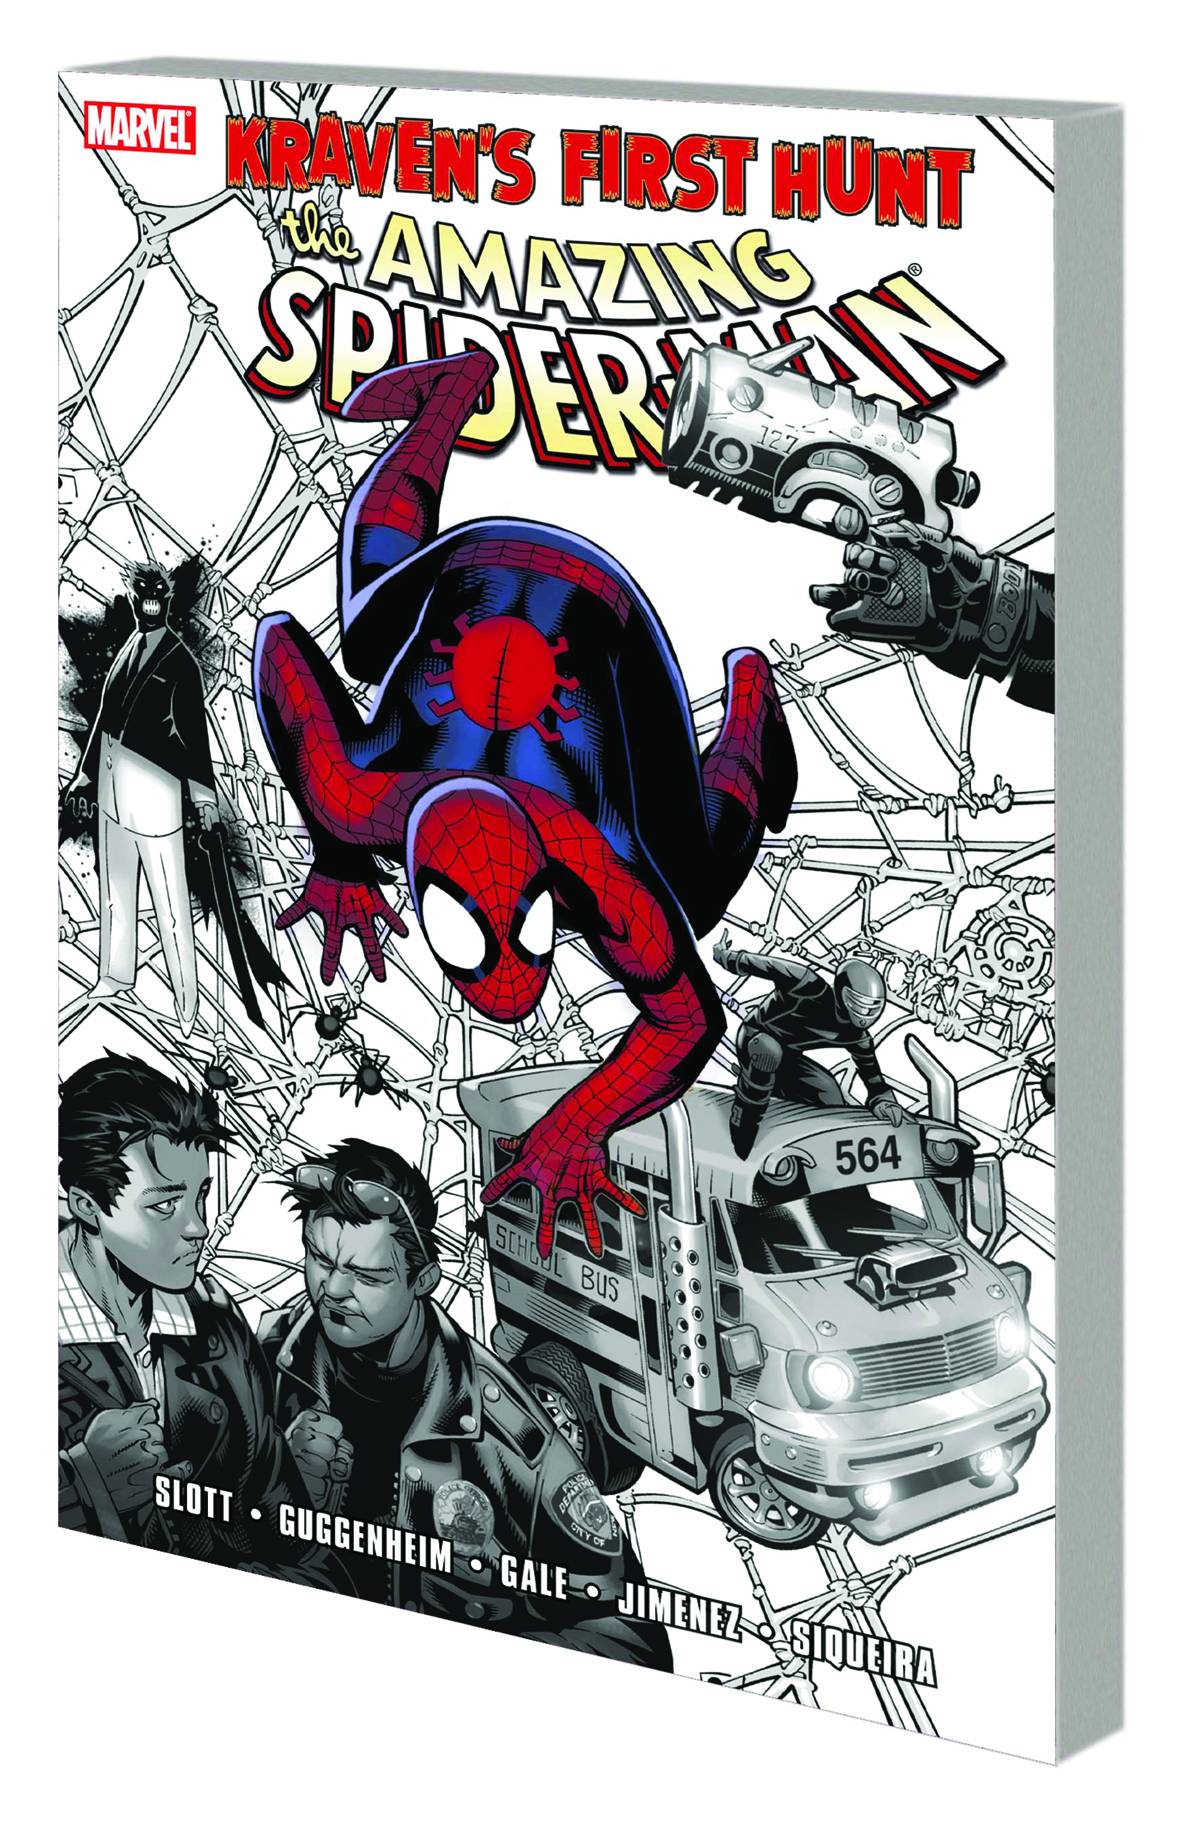 Spider-Man Graphic Novel Kravens First Hunt